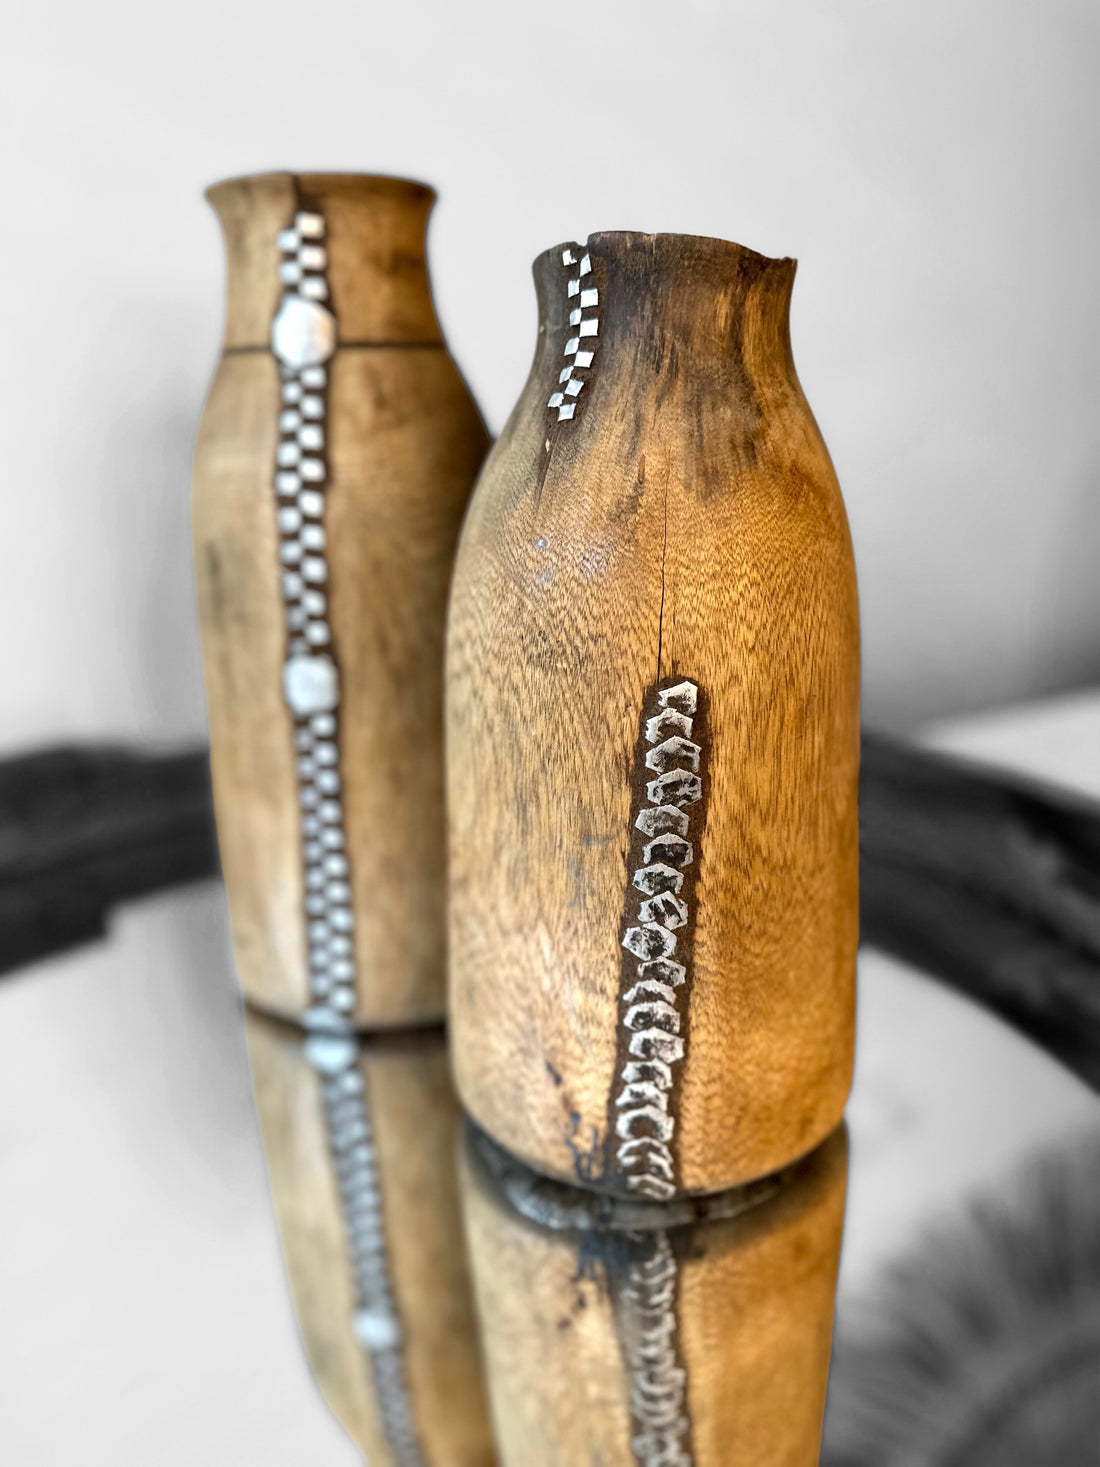 Tutsi Wooden Vases - Rwanda (M/M) - eyahomeliving